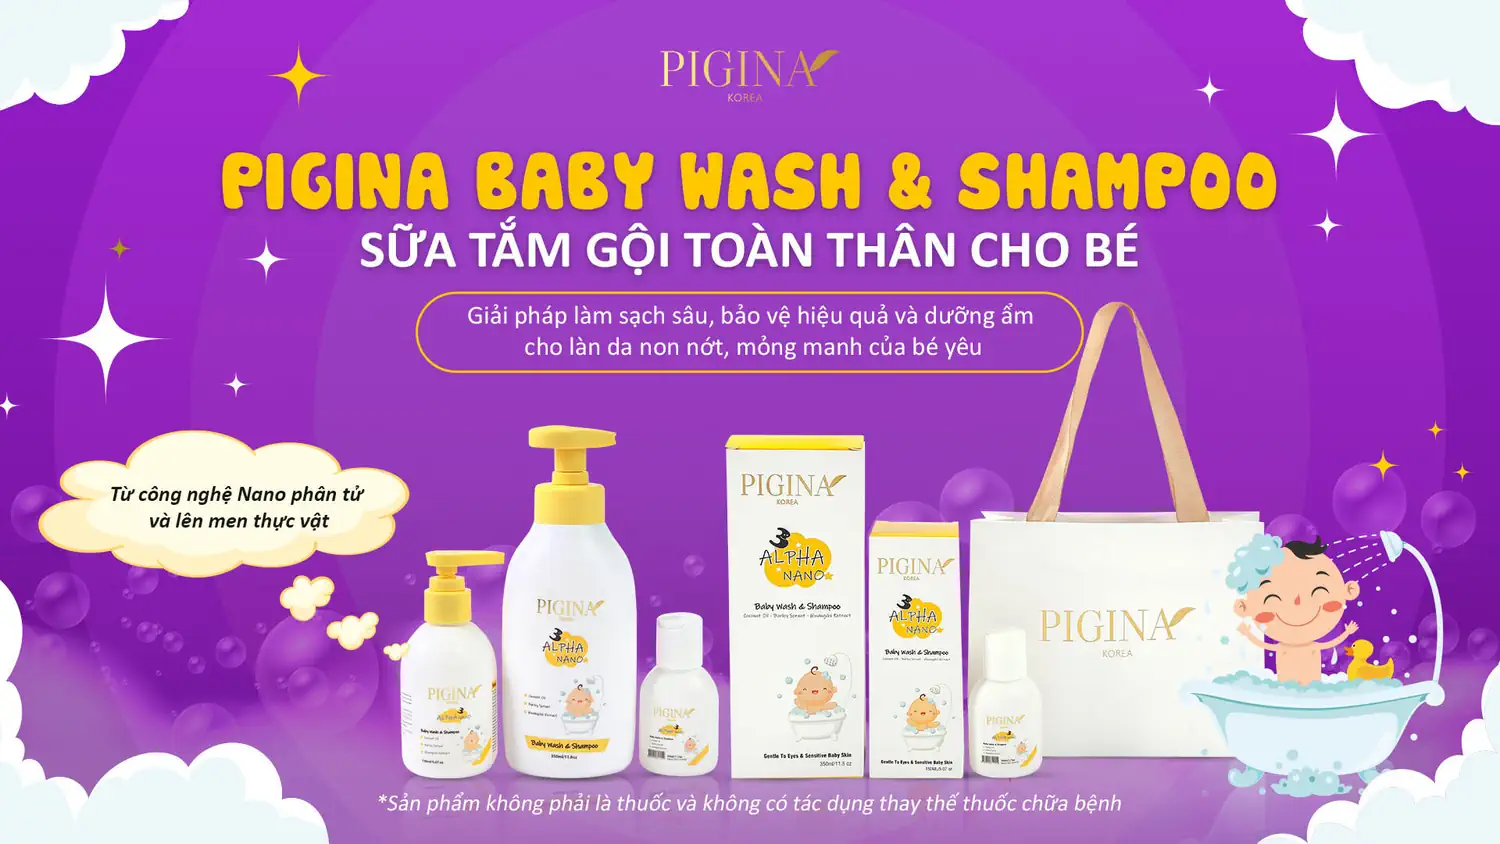 Thương hiệu Pigina - sản phẩm chăm sóc toàn diện sức khỏe và sắc đẹp khu vực nhạy cảm của phái nữ và làn da non nớt của trẻ em - Kuchen Vietnam